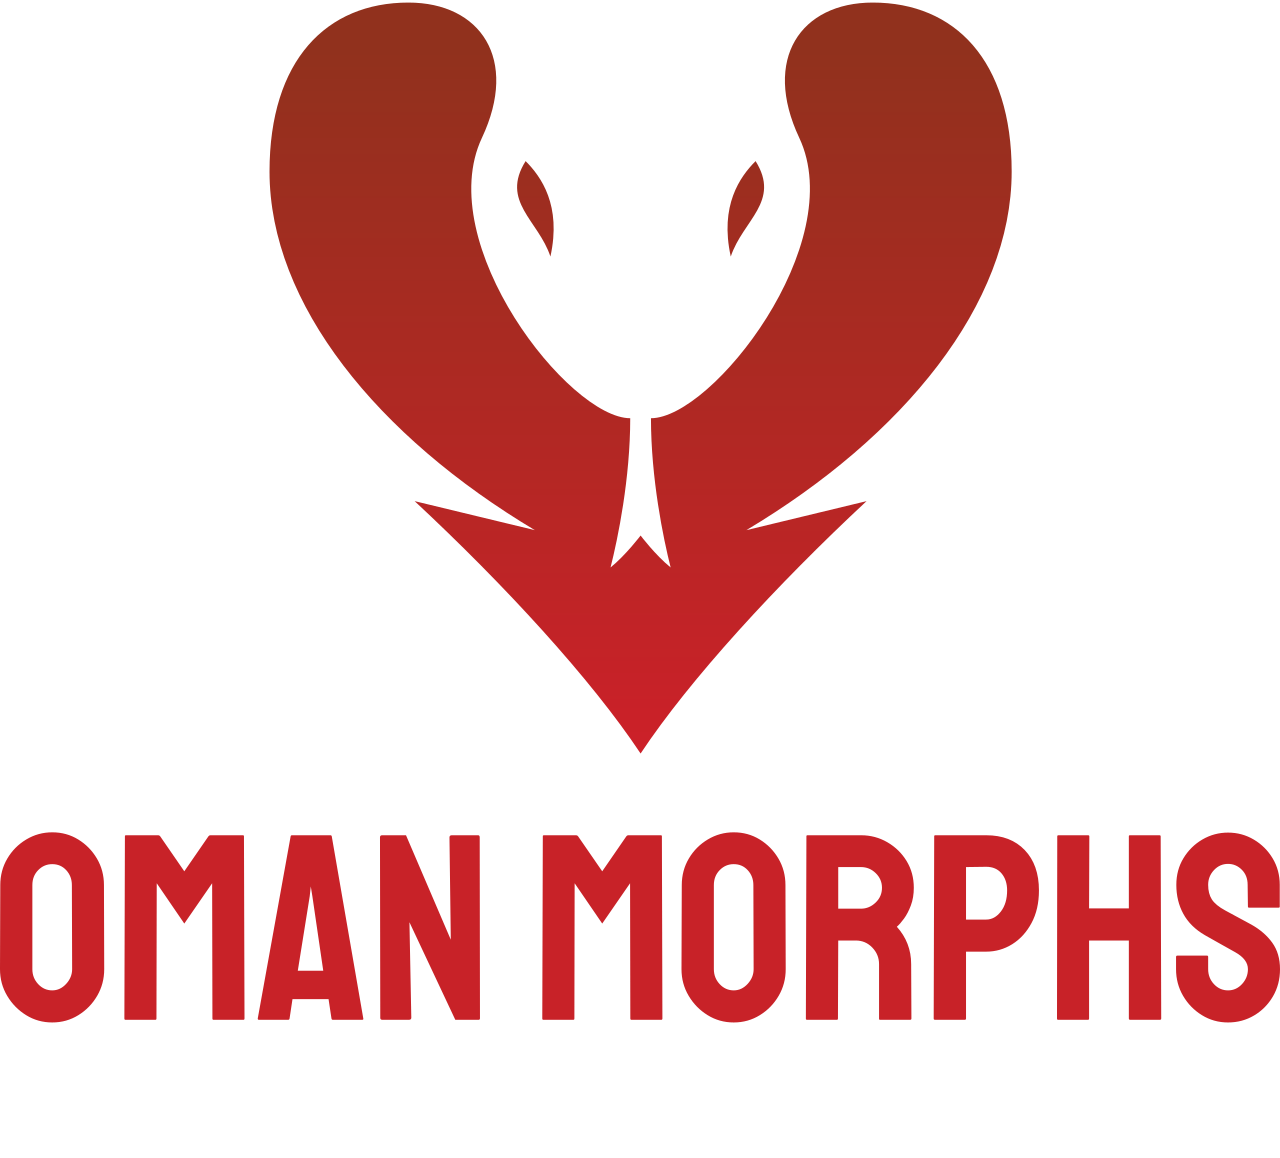 Oman Morphs's logo